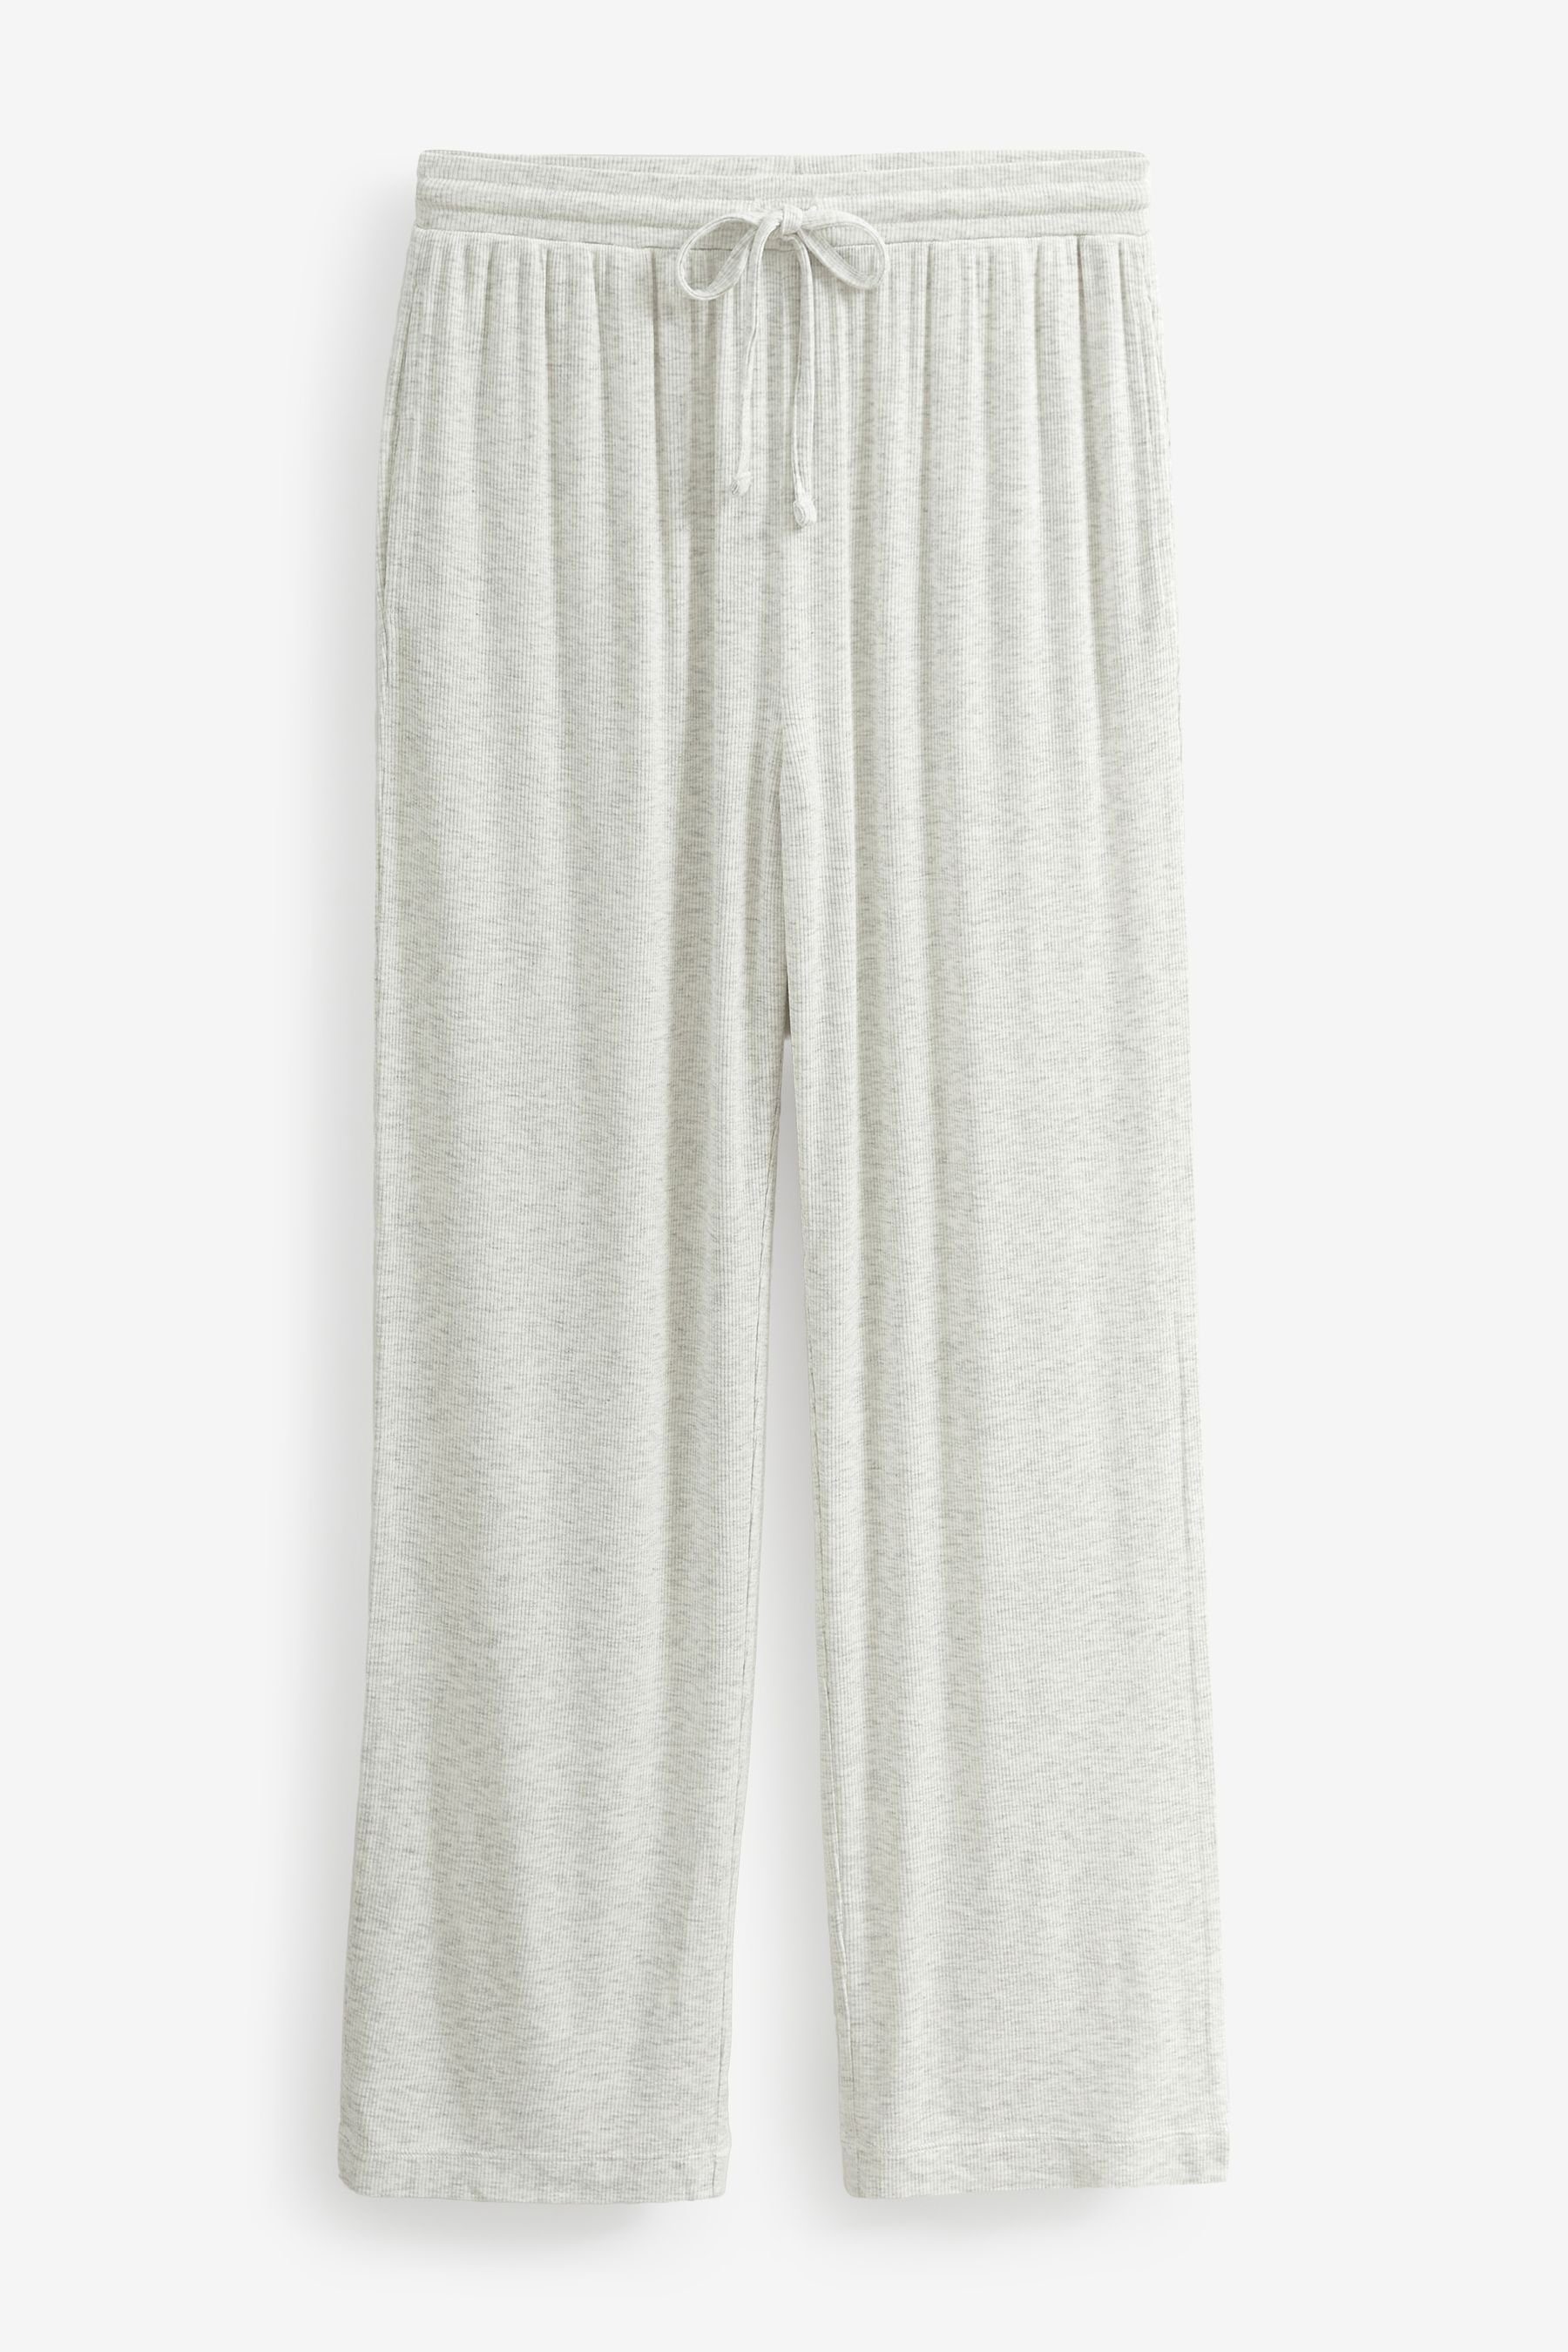 tlg) Gerippter, durchgeknöpfter Grey Next Schlafanzug Pyjama (2